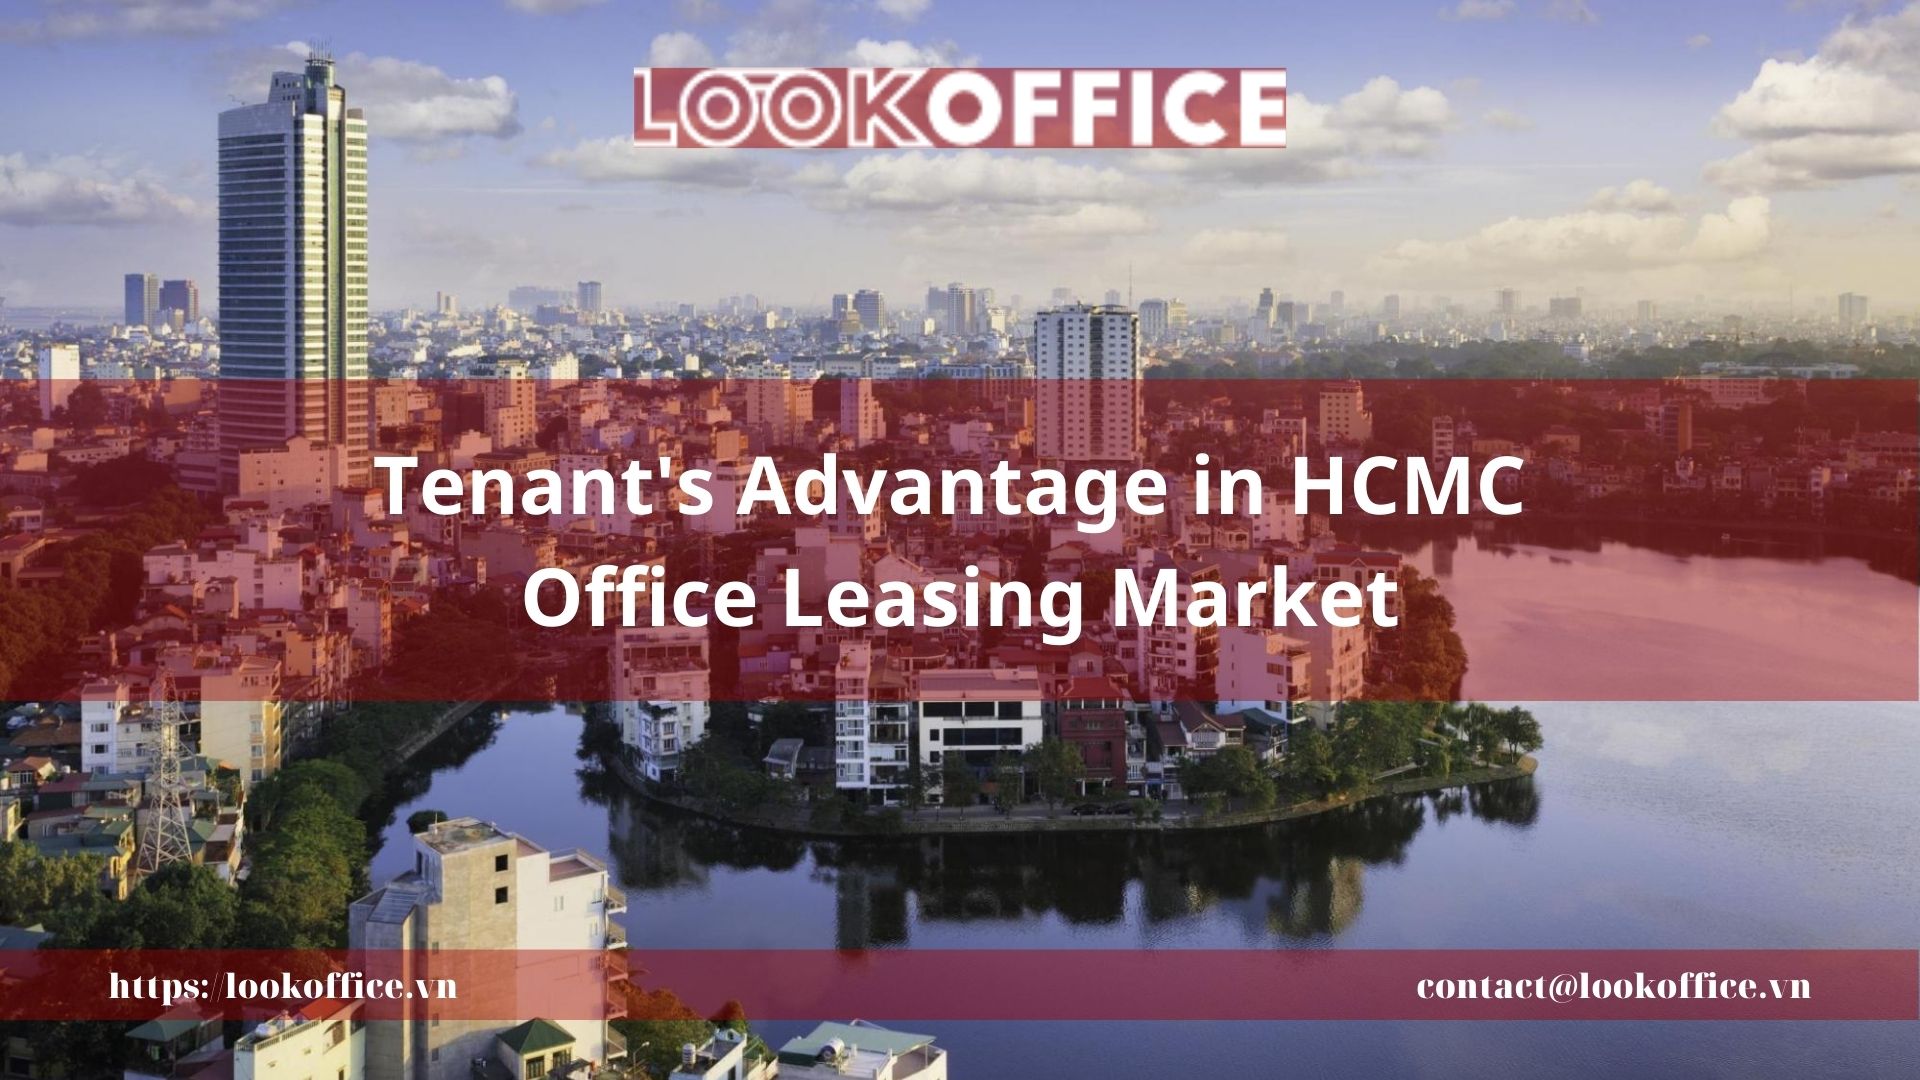 Tenant’s Advantage in HCMC Office Leasing Market